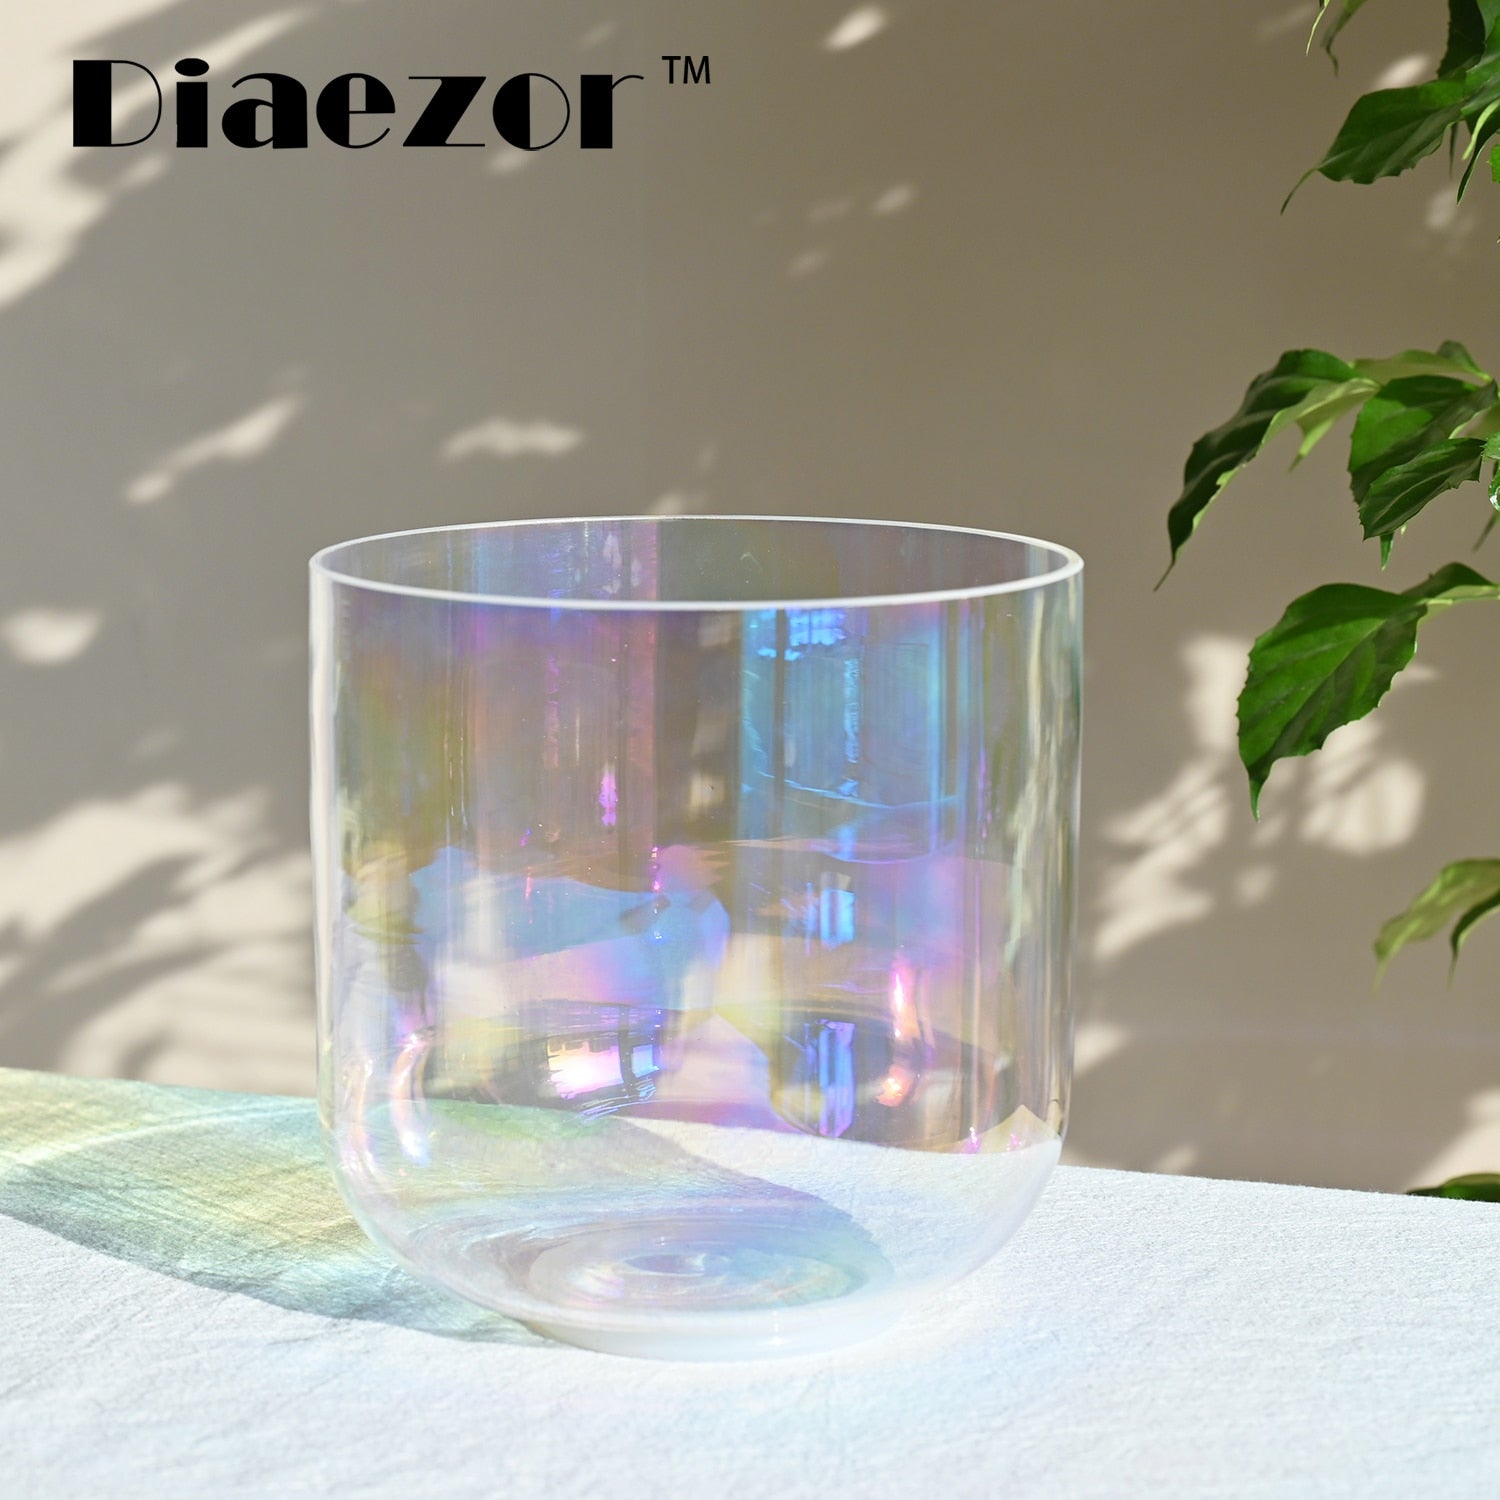 Clear Alchemy Quartz Crystal Singing Bowl for Sound Healing 7 Inch 432Hz